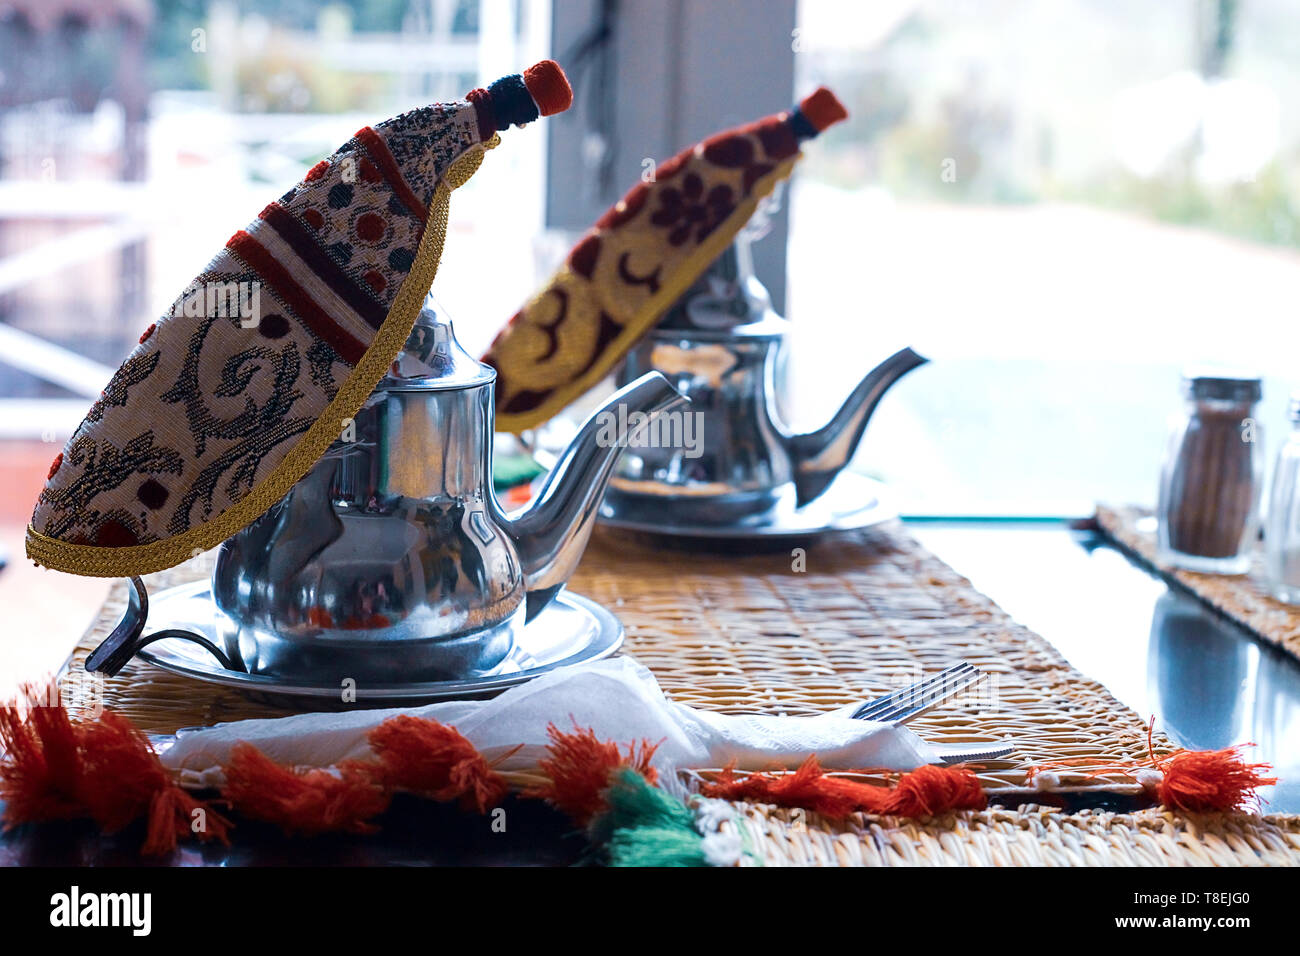 Thé marocain à la menthe et le sucre dans un verre sur une plaque de cuivre avec une bouilloire. Maroc Banque D'Images